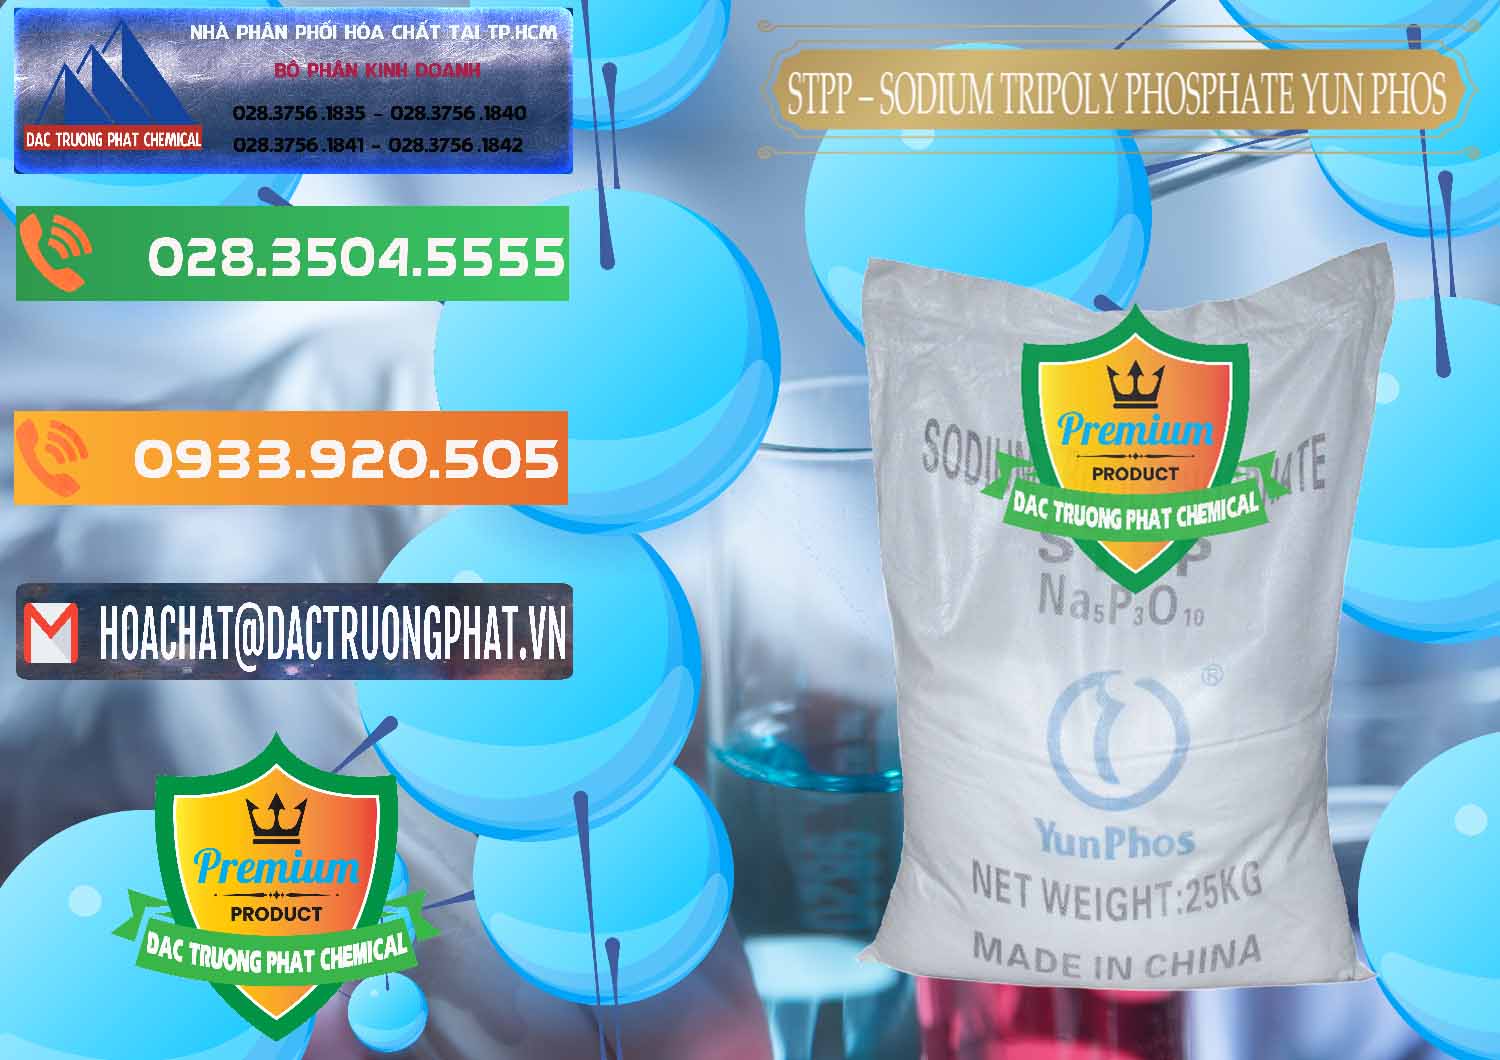 Cung cấp _ bán Sodium Tripoly Phosphate - STPP Yun Phos Trung Quốc China - 0153 - Cung cấp _ kinh doanh hóa chất tại TP.HCM - hoachatxulynuoc.com.vn